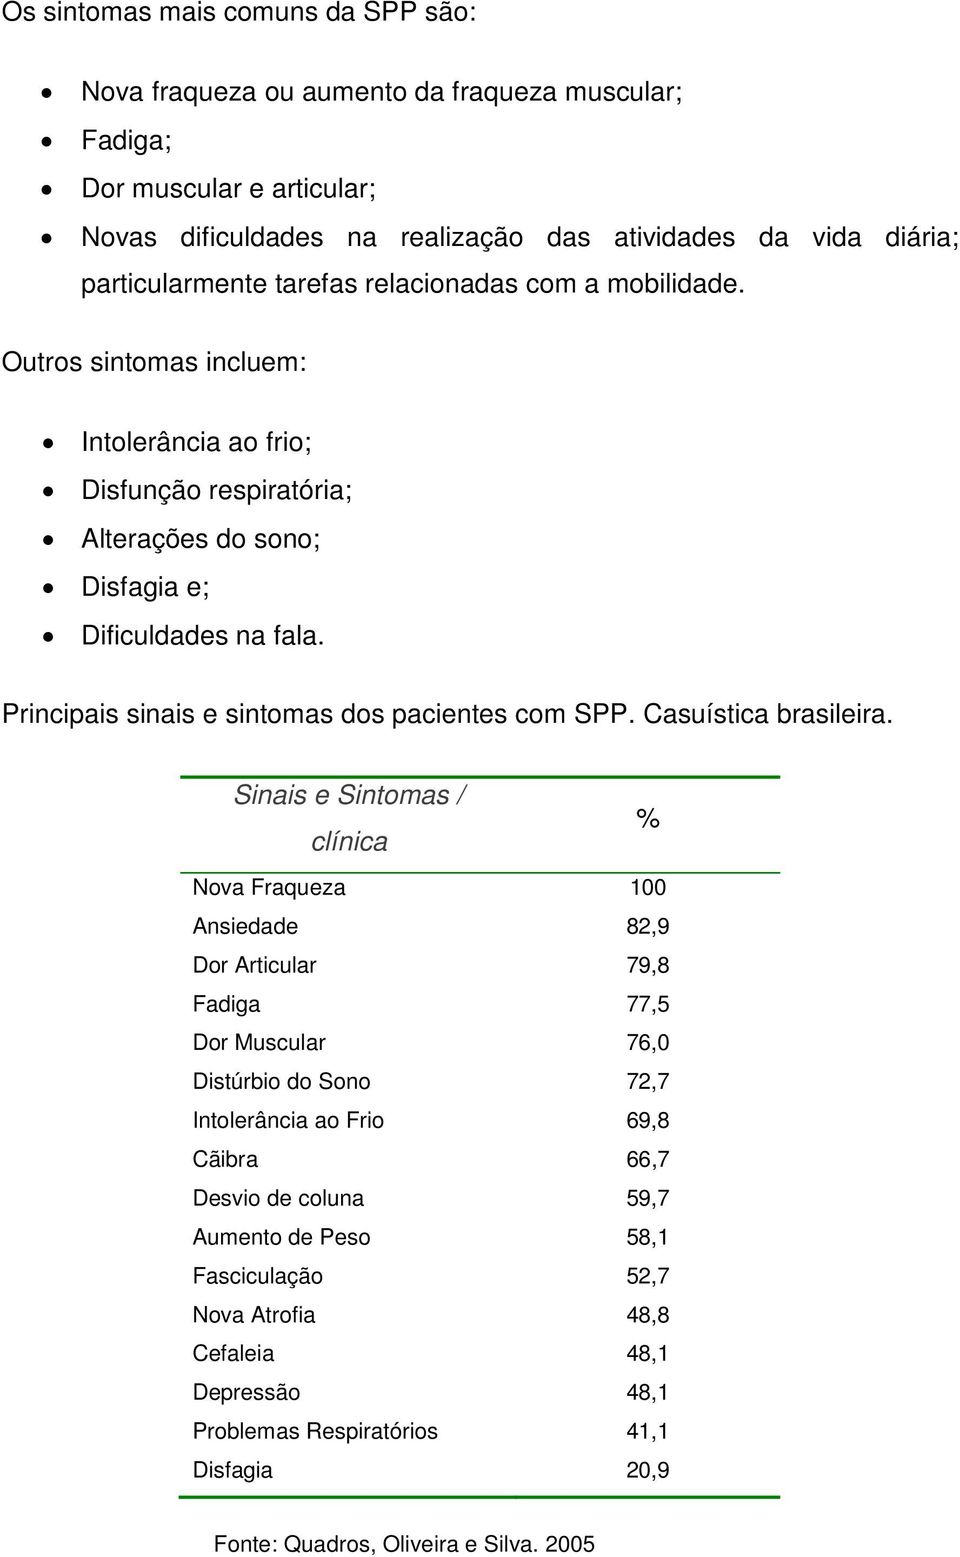 Principais sinais e sintomas dos pacientes com SPP. Casuística brasileira.